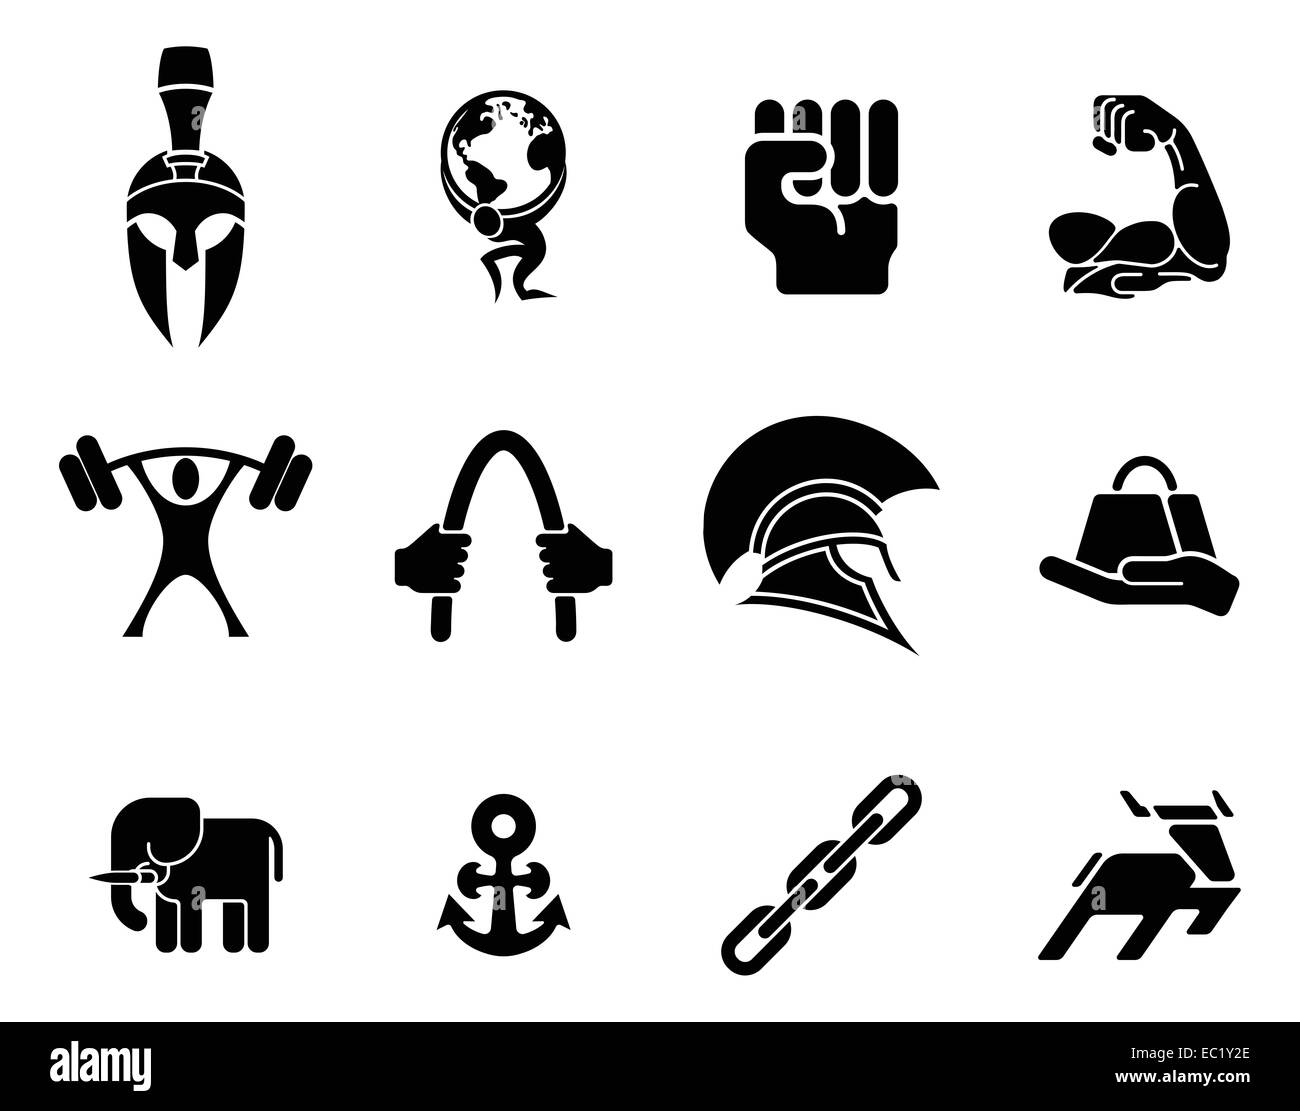 Force conceptuelle icon set d'icônes relatives à la notion de force ou d'être fort Banque D'Images